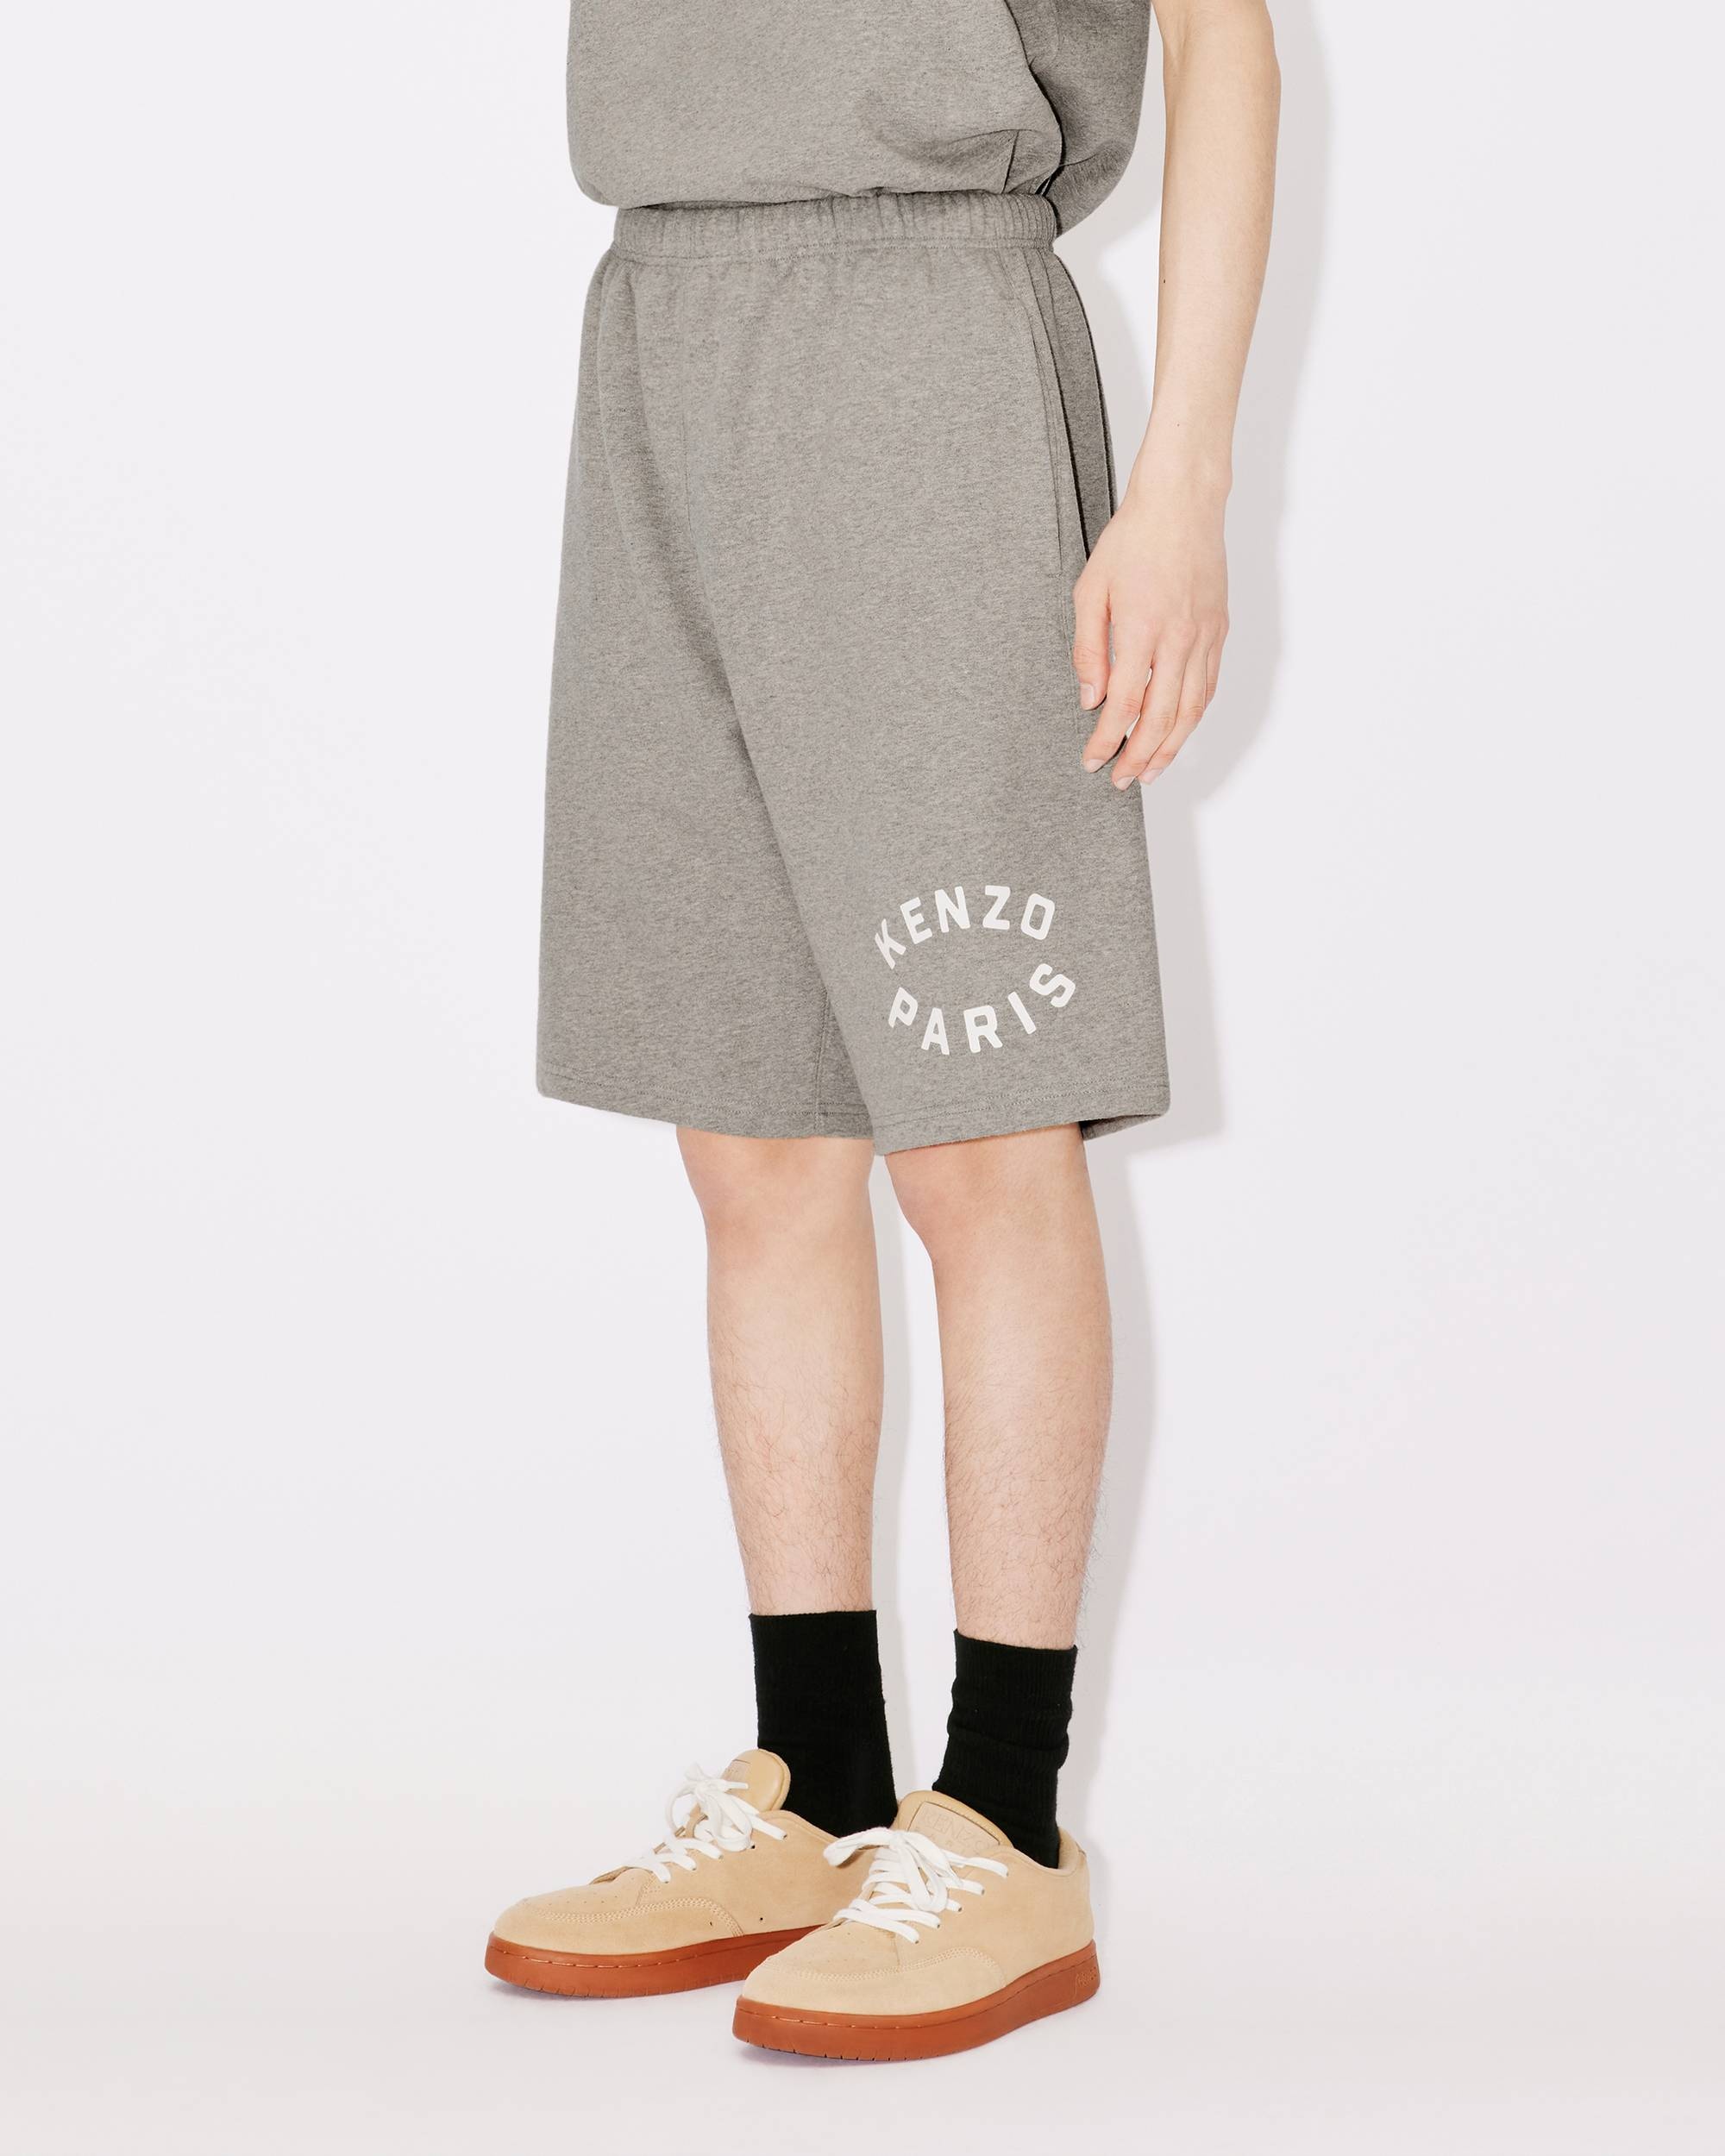 'KENZO Target' shorts - 4